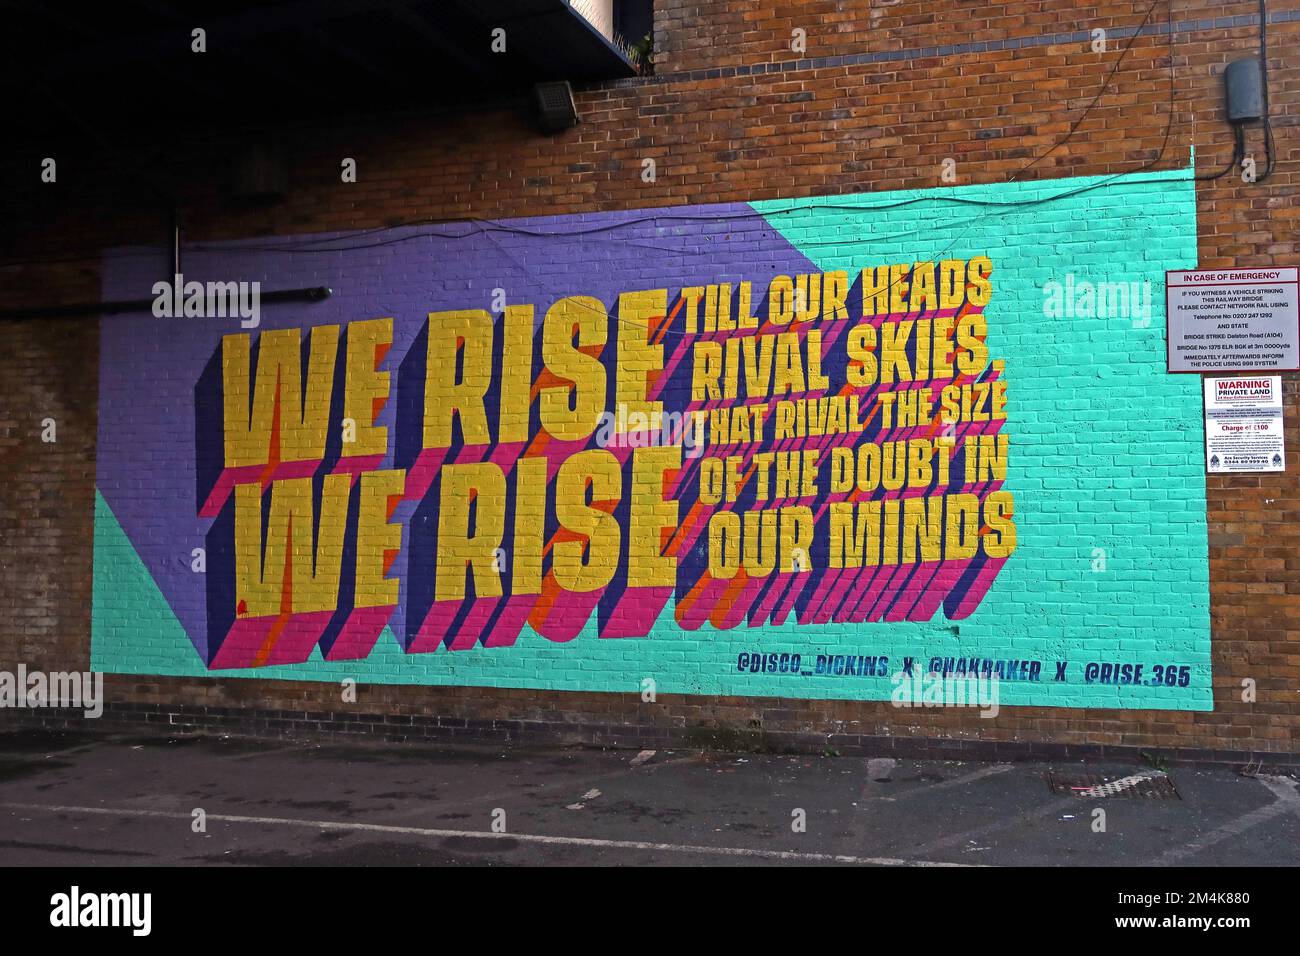 Rise 365 Hackney - We Rise, murale in Hackney Downs, Londra, Regno Unito - fino a quando le nostre teste rivali cieli, che rivaleggiano la dimensione del dubbio nella nostra mente Foto Stock